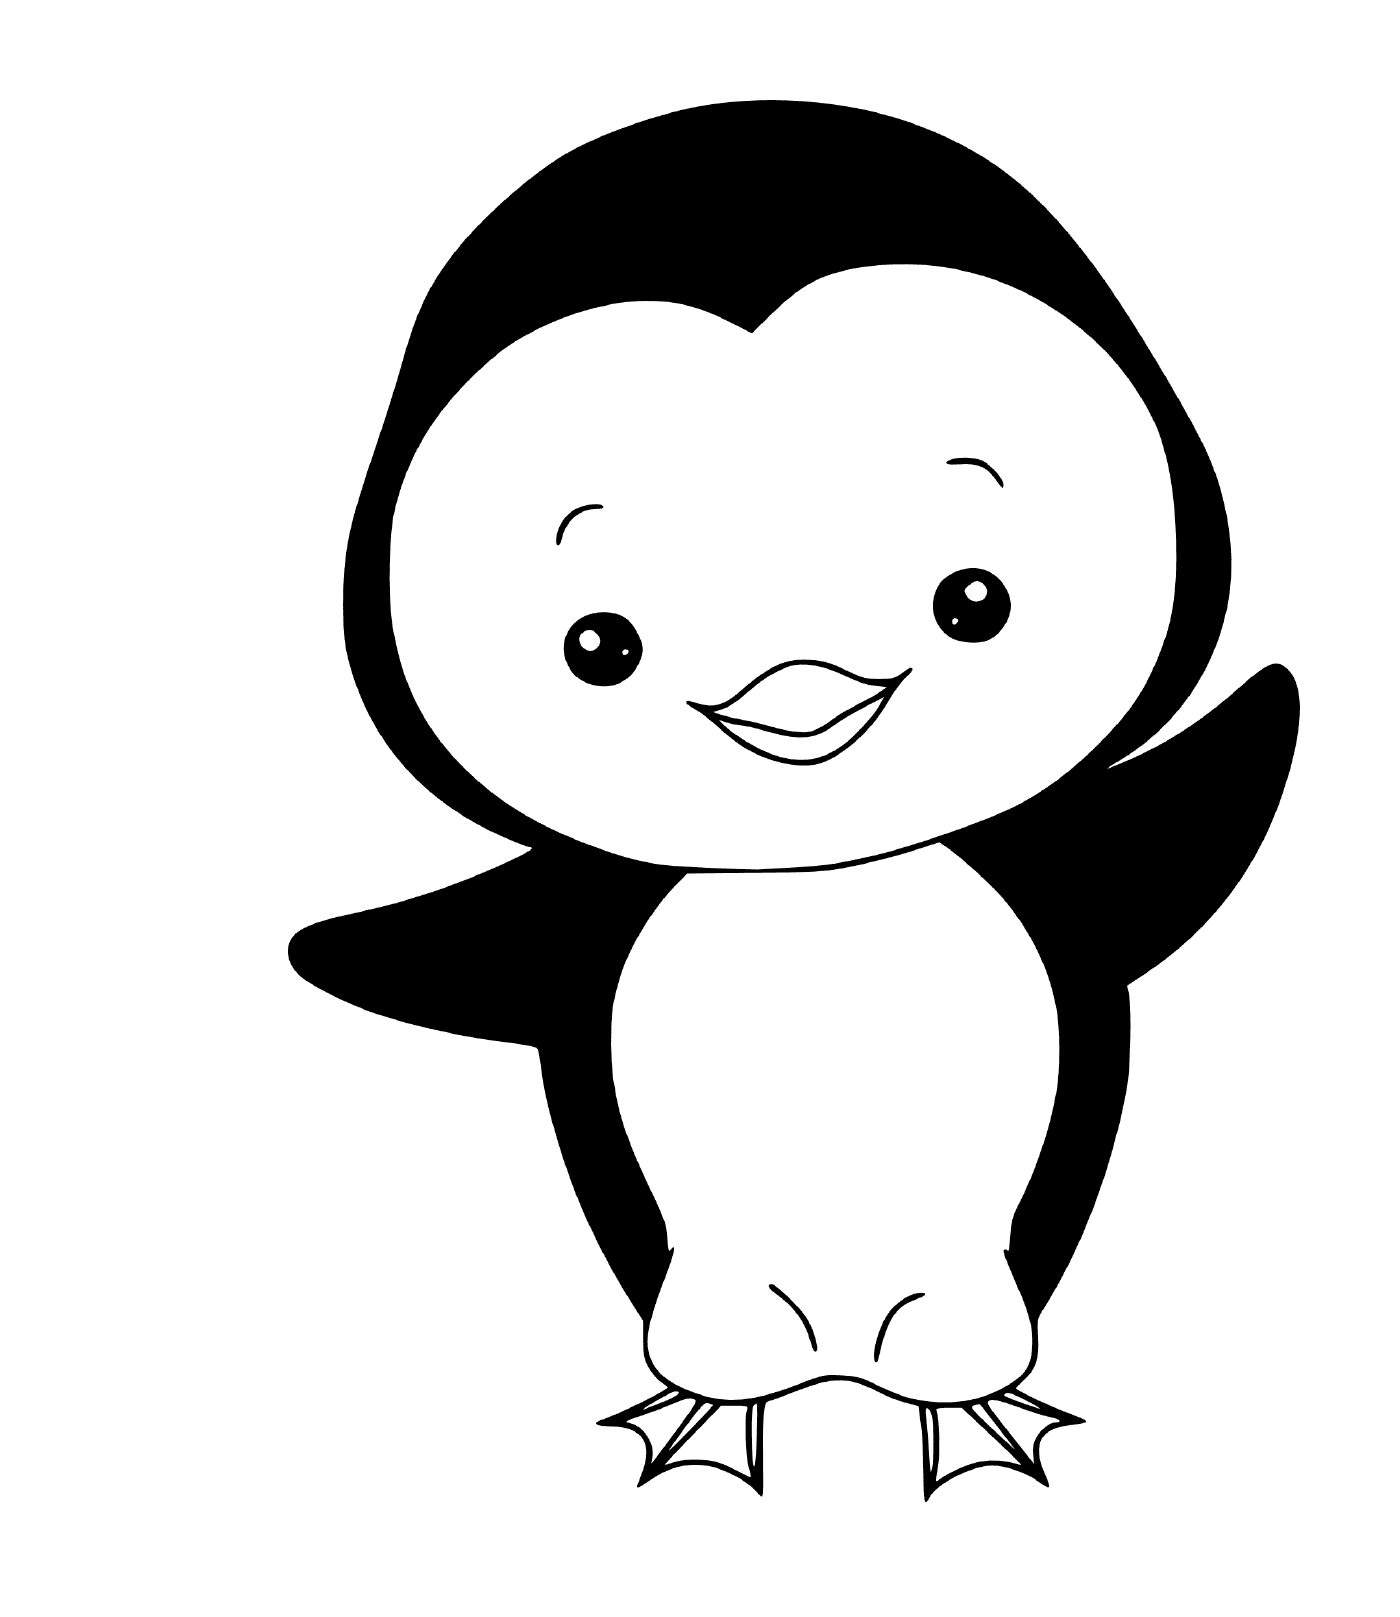  Pinguino facile da disegnare 